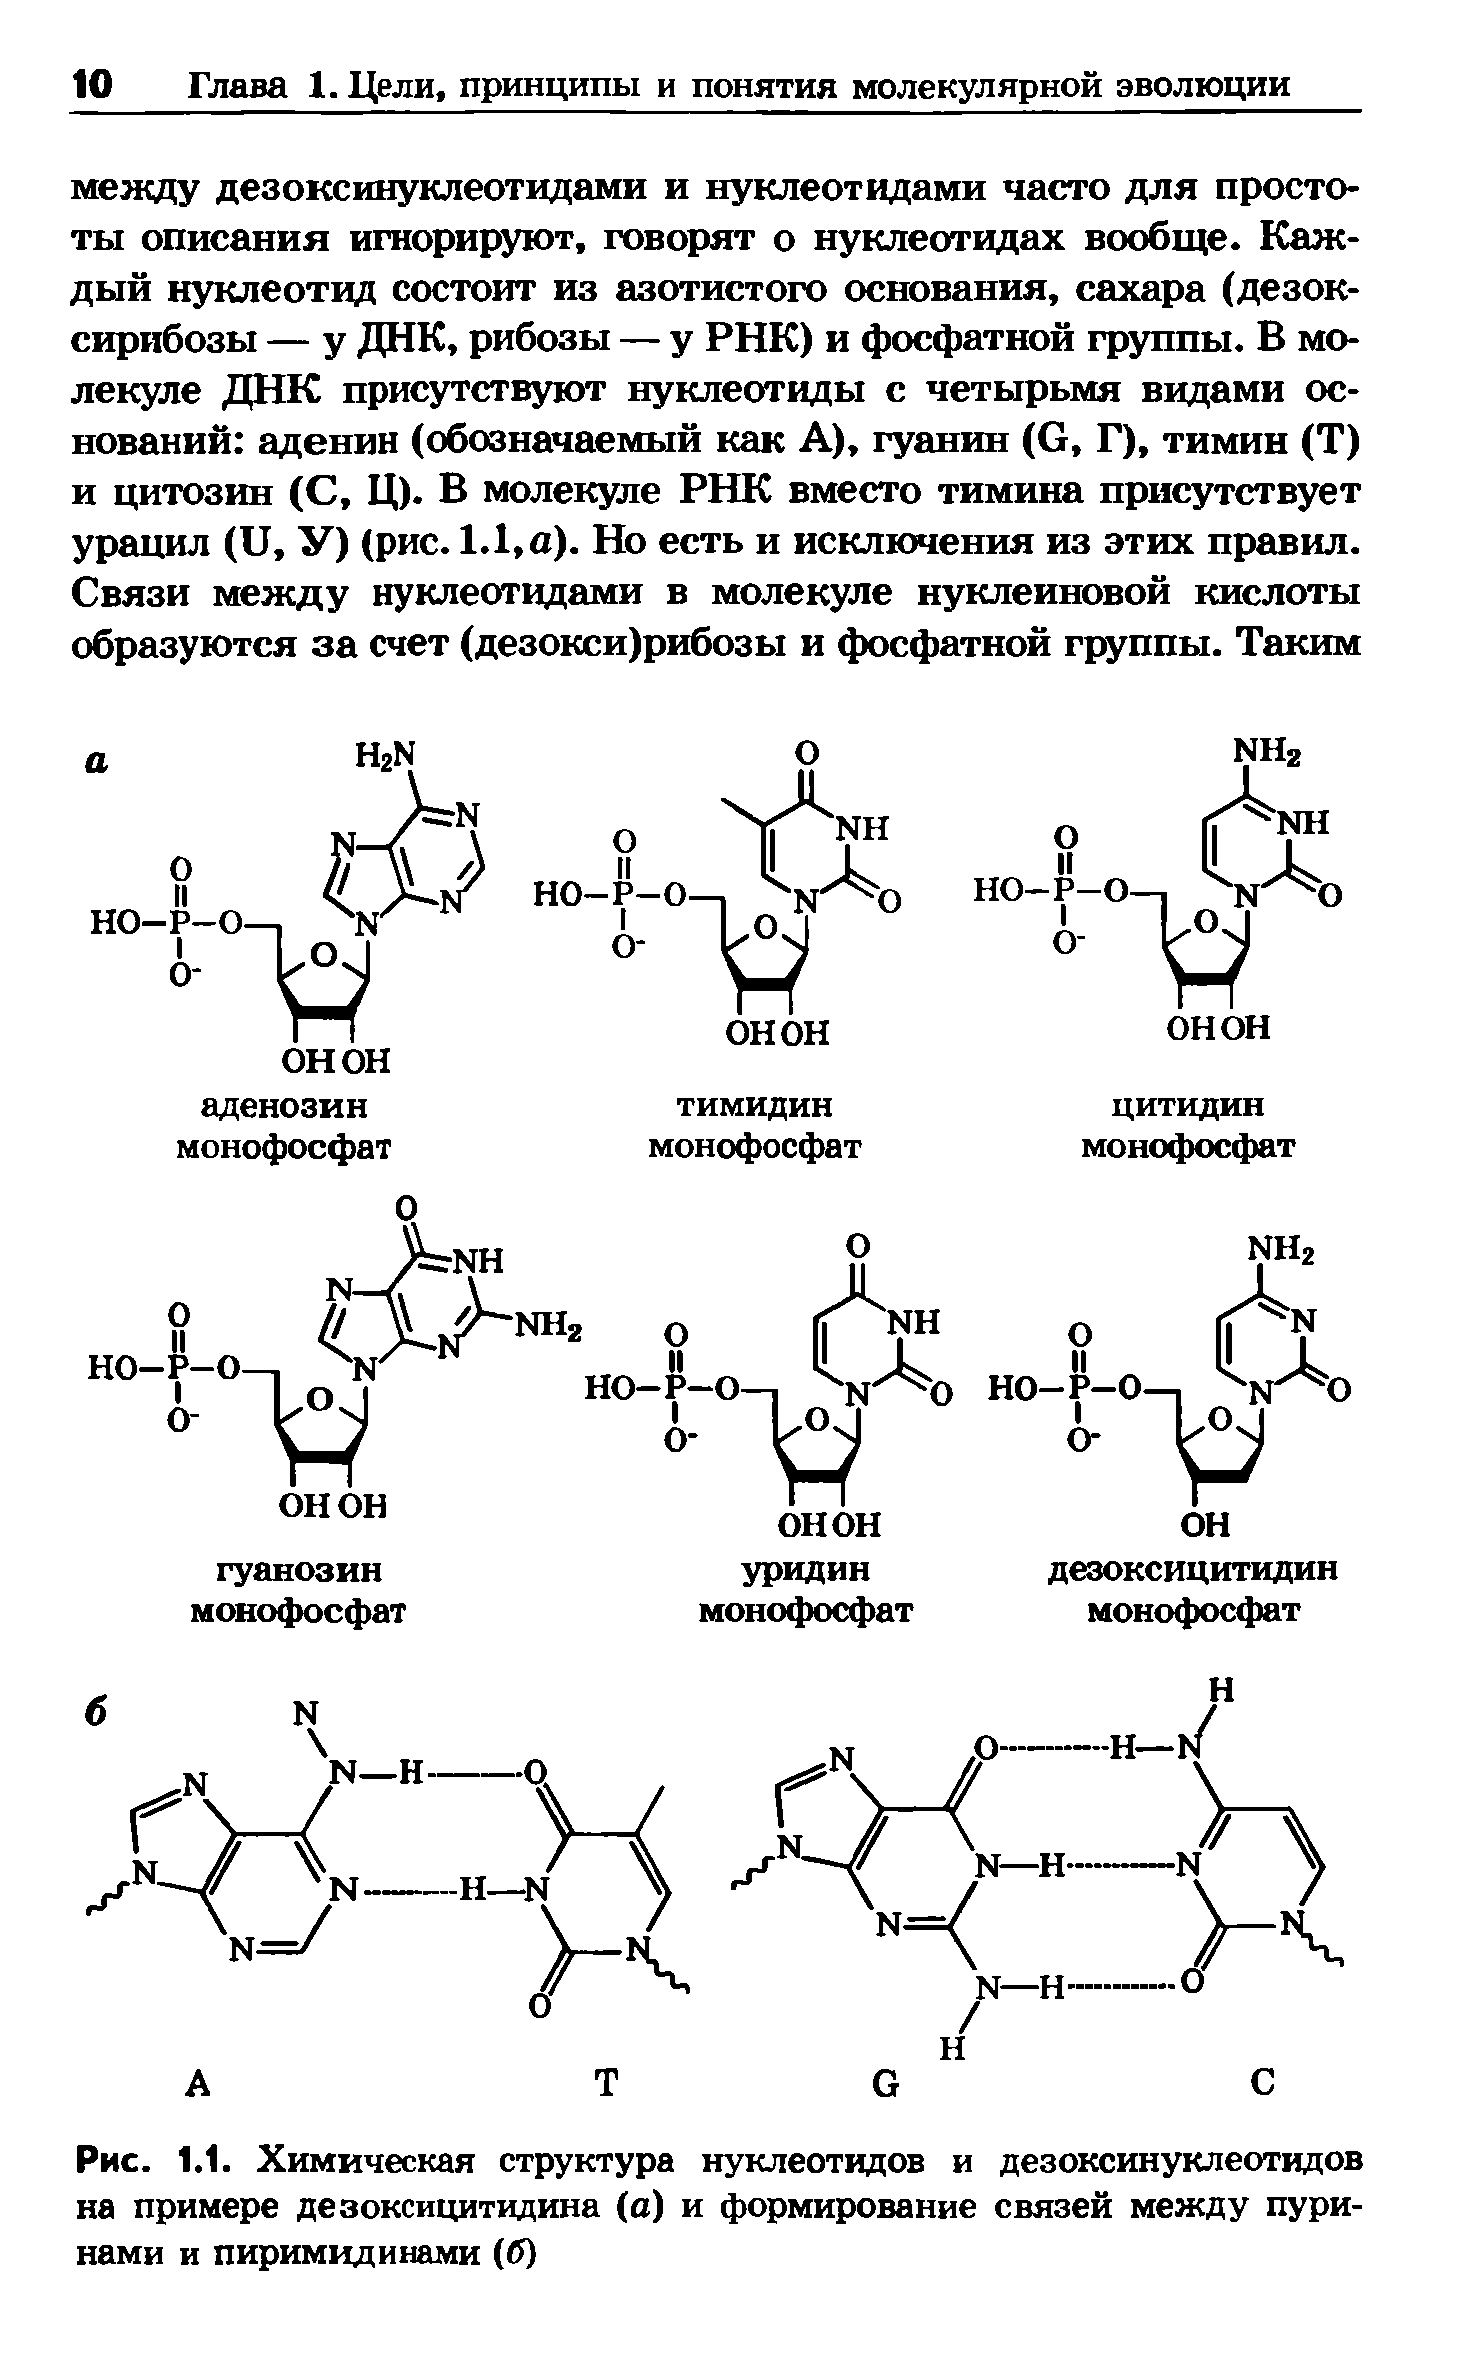 Рис. 1.1. Химическая структура нуклеотидов и дезоксинуклеотидов на примере дезоксицитидина (а) и формирование связей между пуринами и пиримидинами (б)...